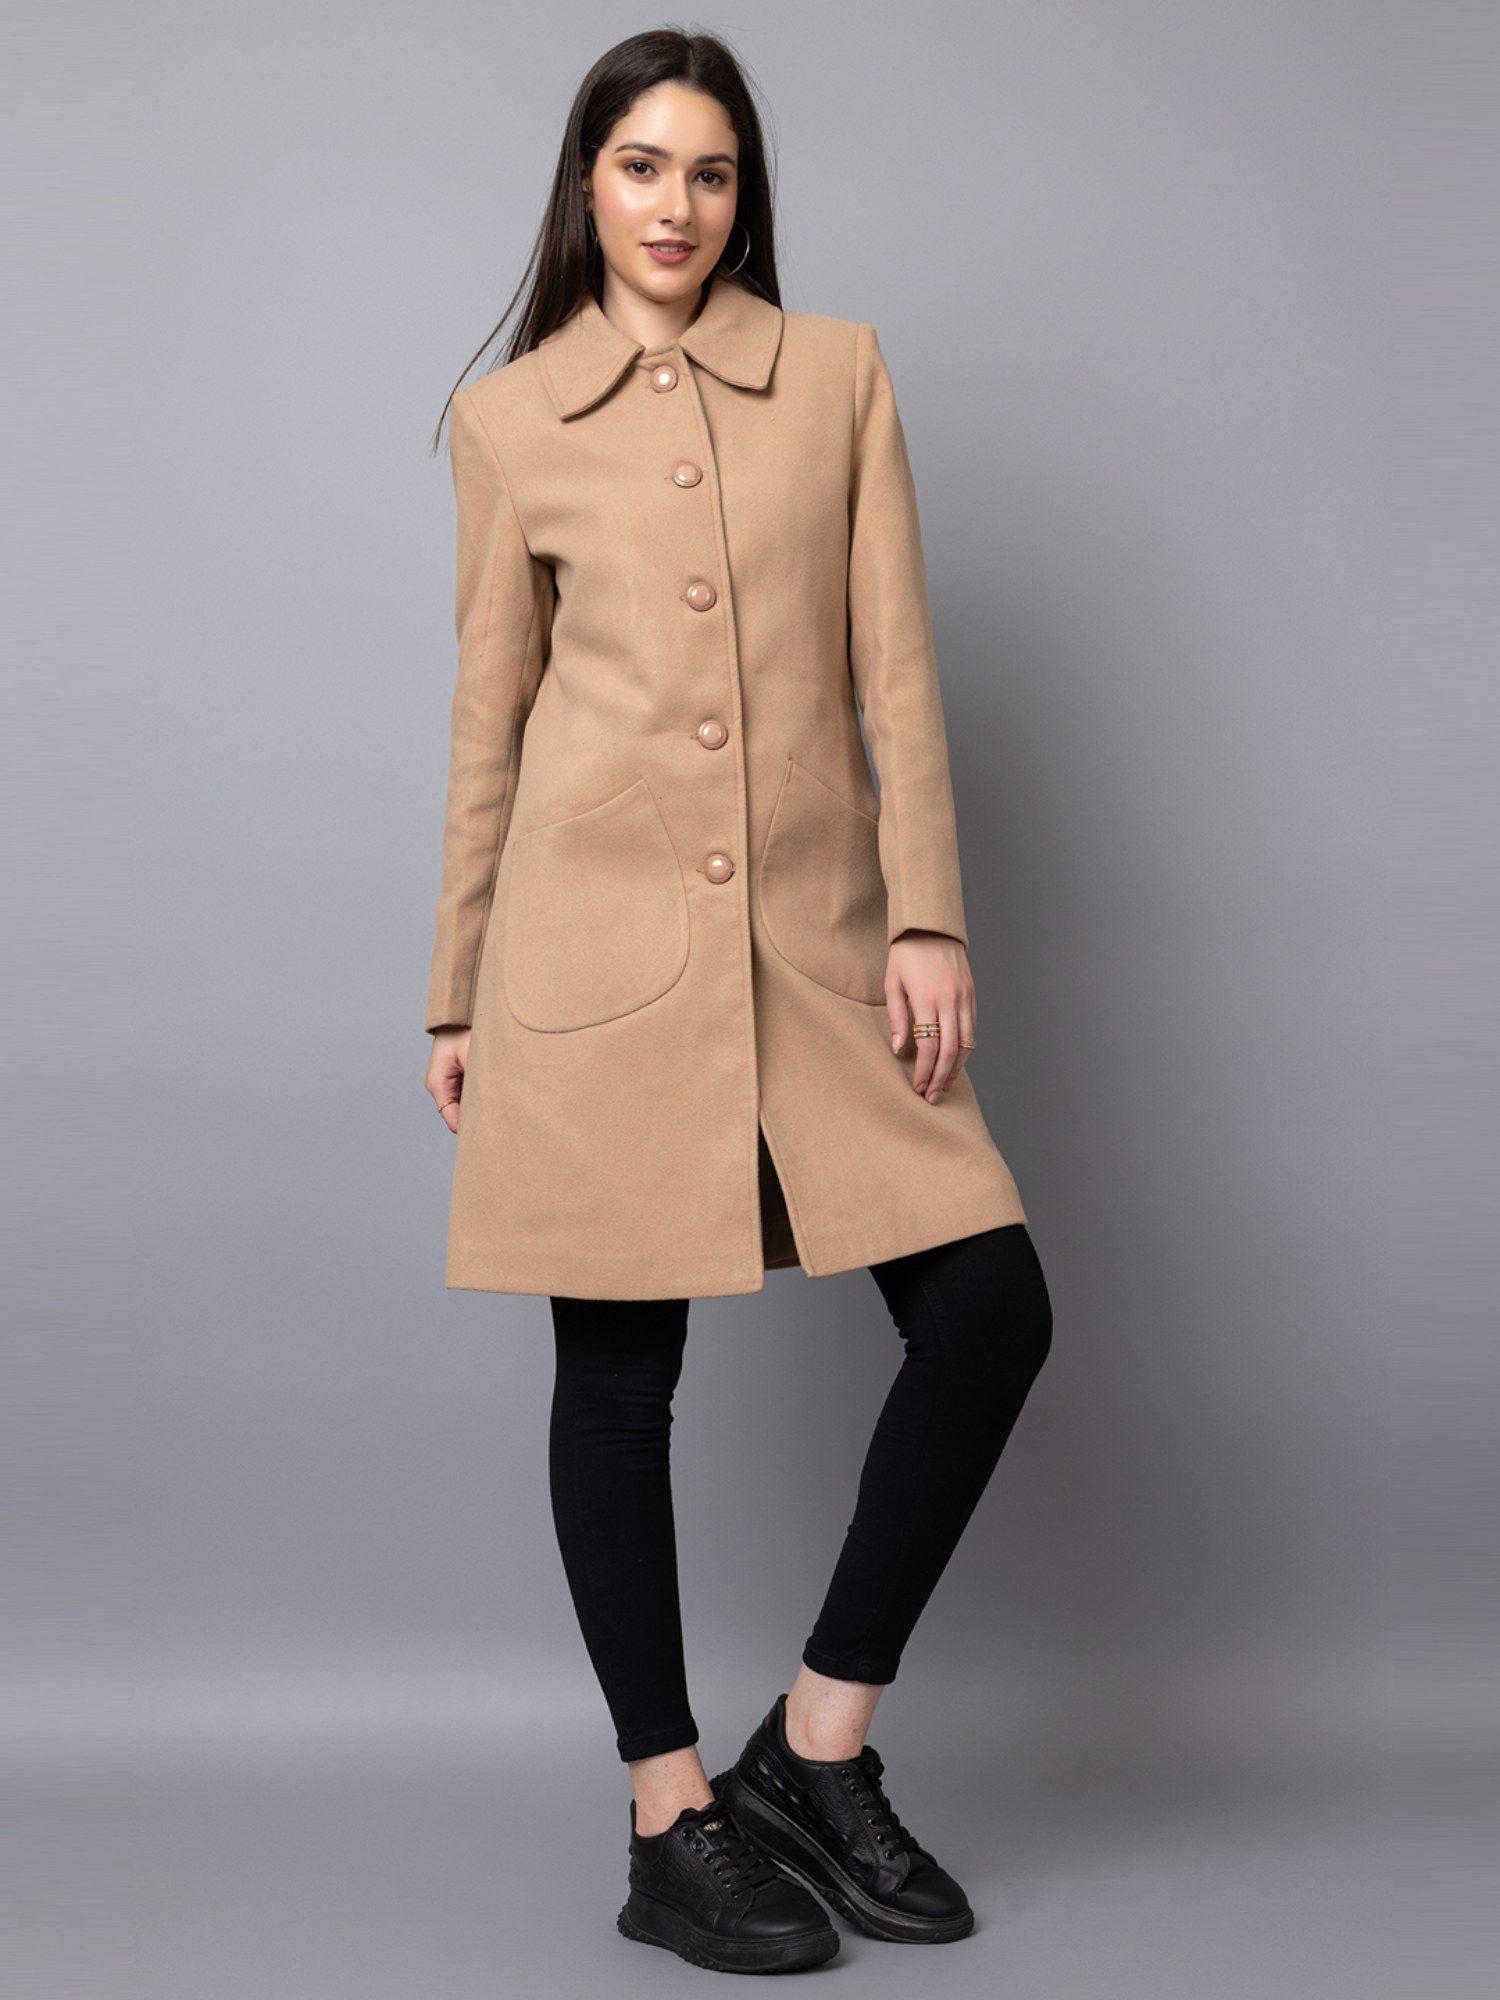 women winter wear stylish brown coat